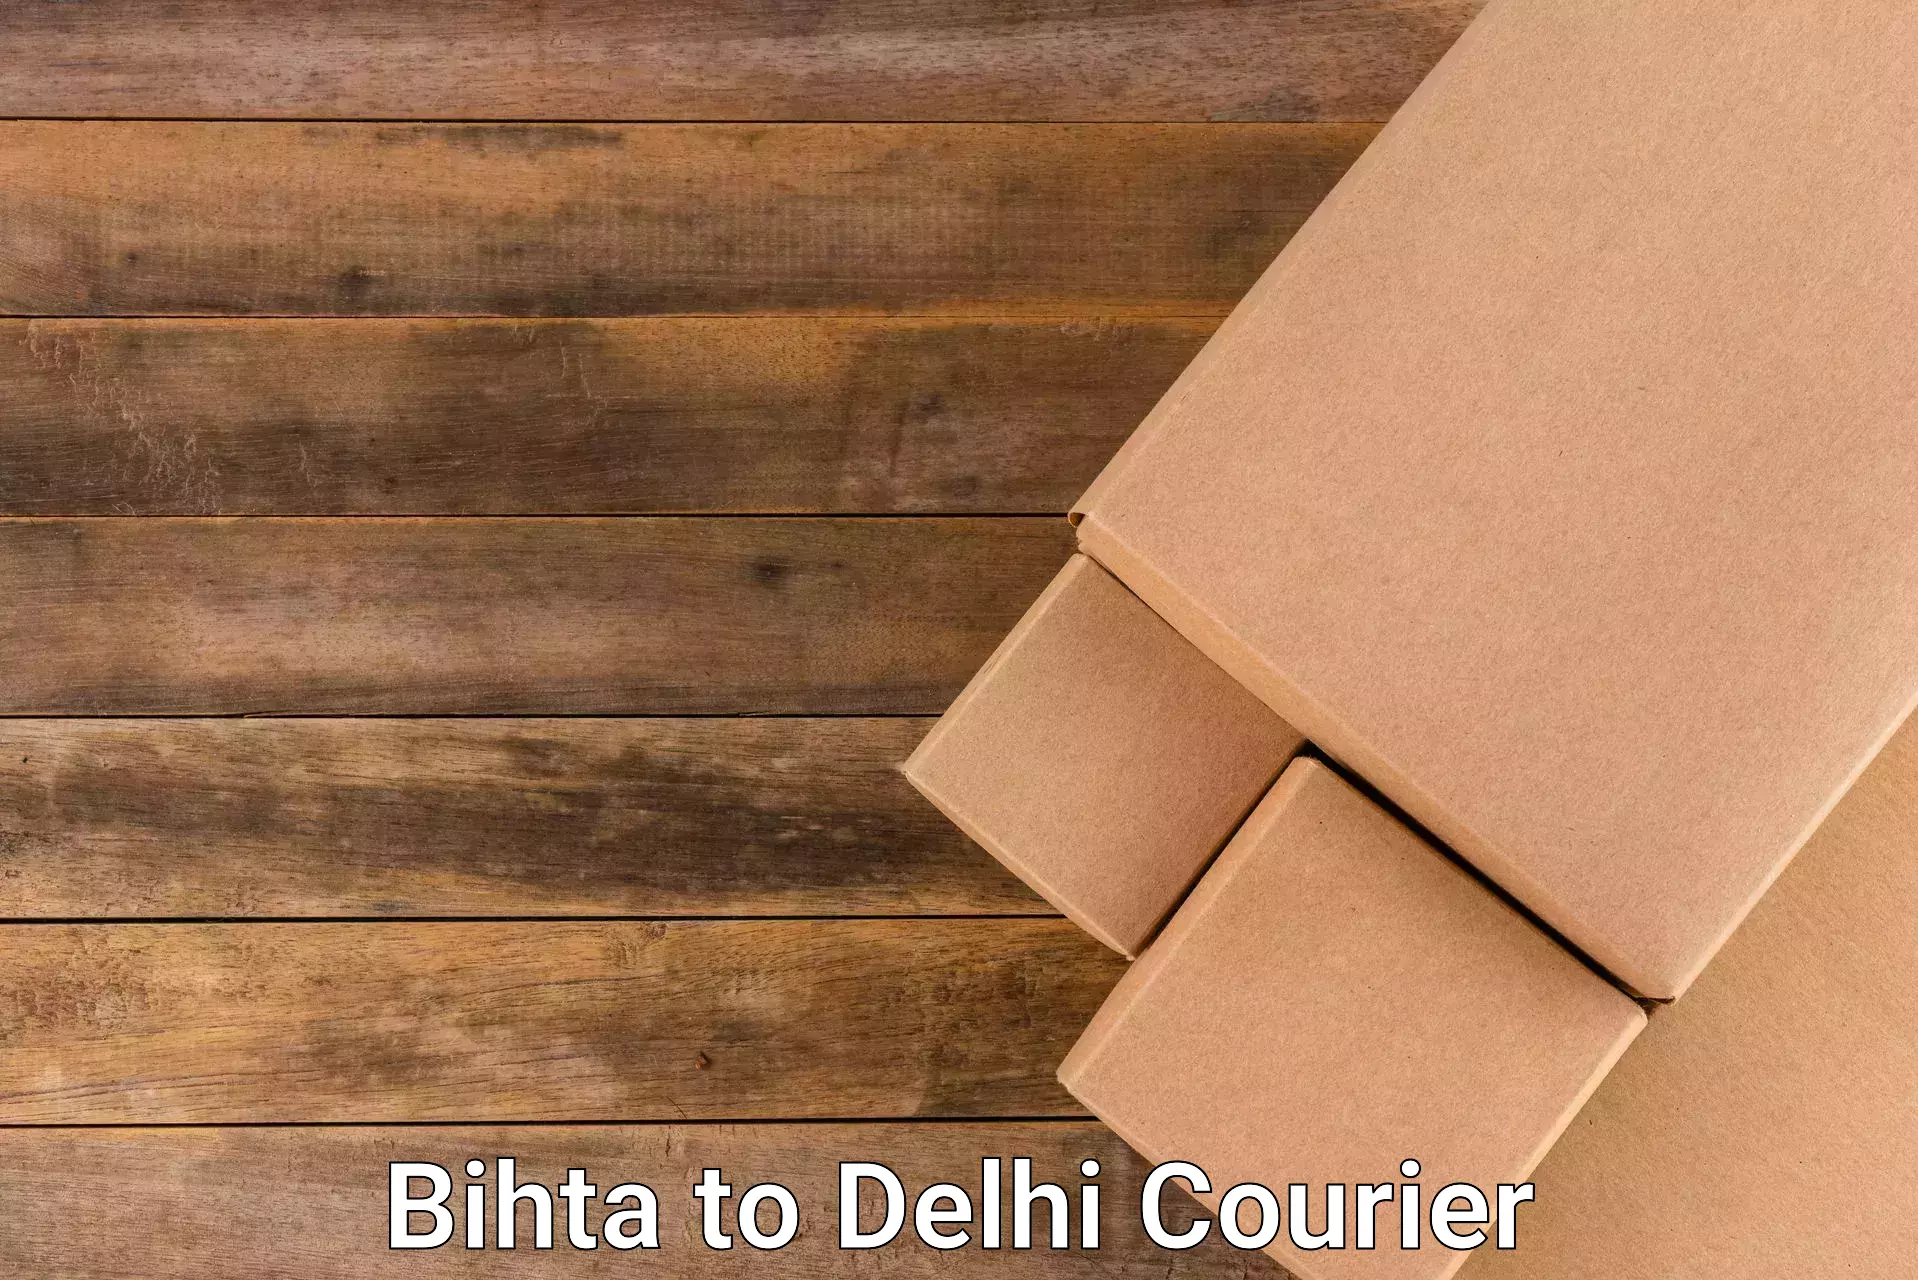 Modern courier technology Bihta to Ramesh Nagar